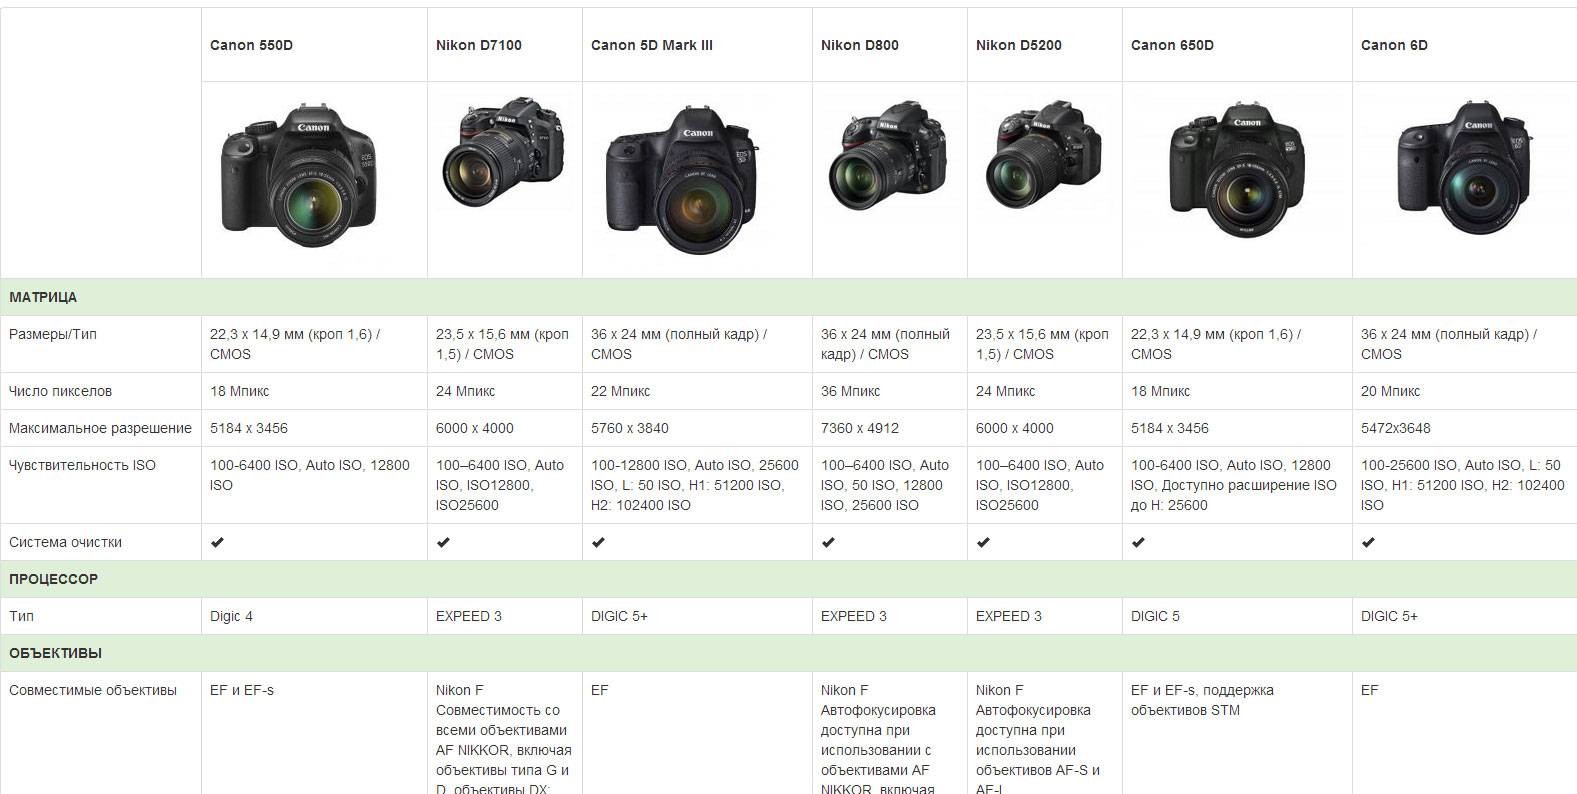 Обзор цифровых фотоаппаратов canon: все модели линейки, от компактных до профессиональных зеркалок